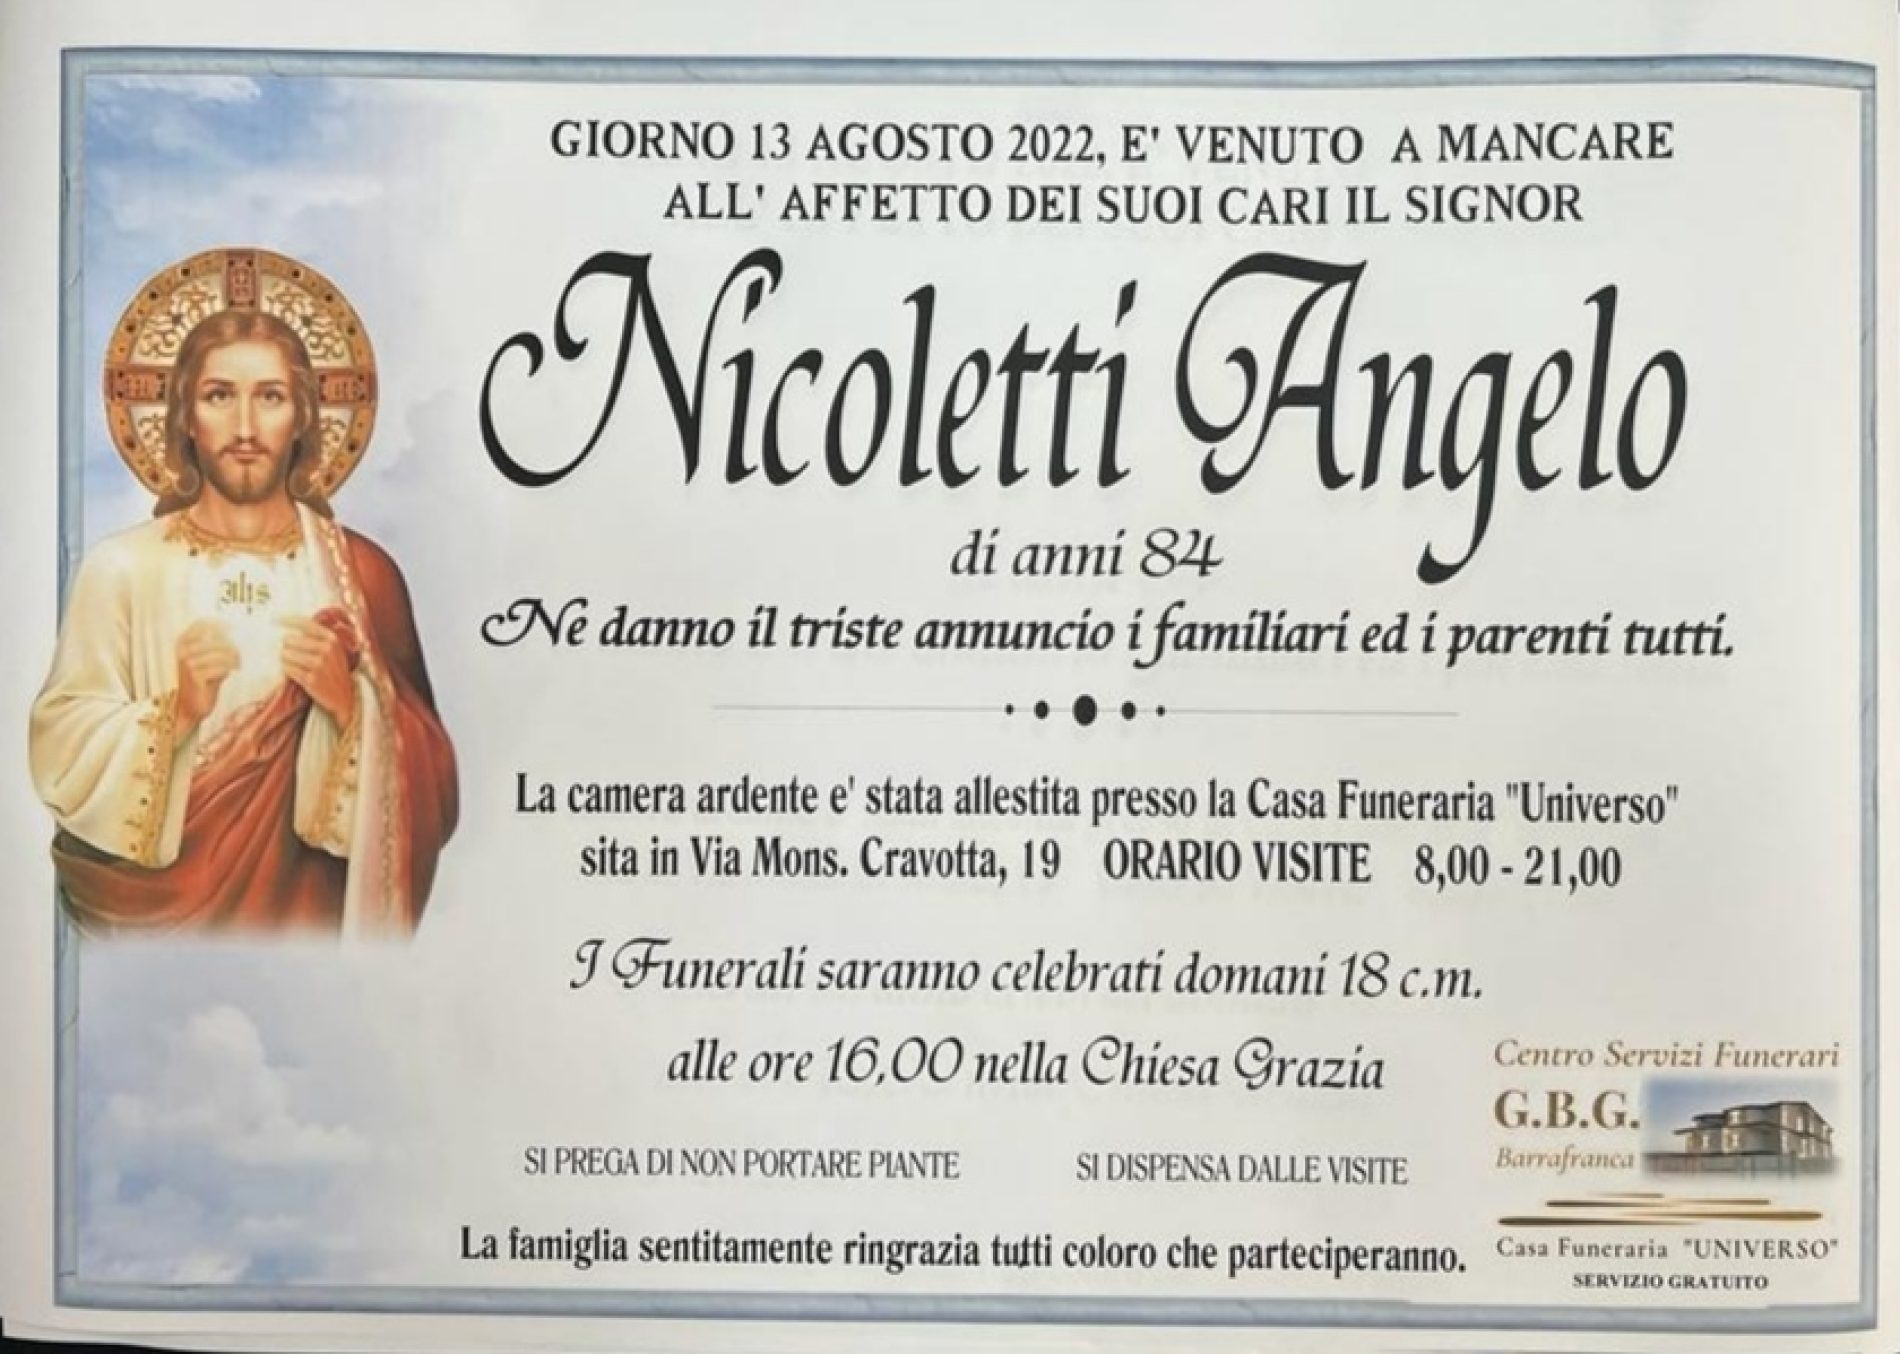 ANNUNCIO CENTRO SERVIZI FUNERARI G.B.G. Sig. Nicoletti Angelo di anni 84